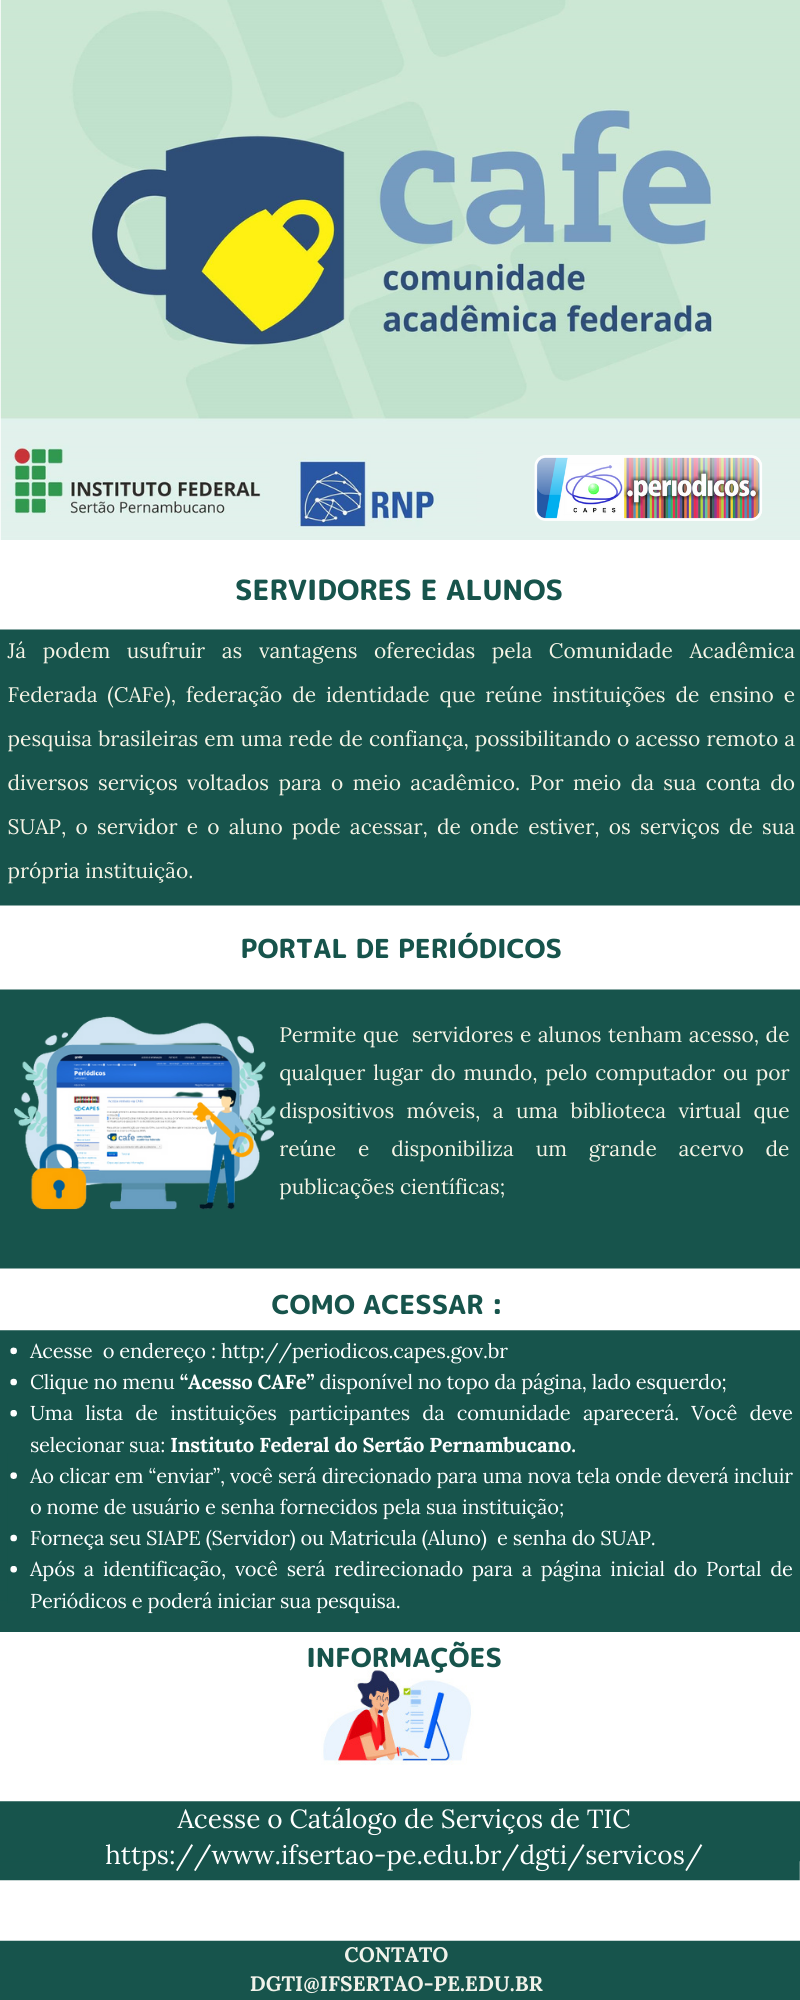 Acesso-ao-Portal-de-Periódicos-CAPES-via-Federação-CAFe.png